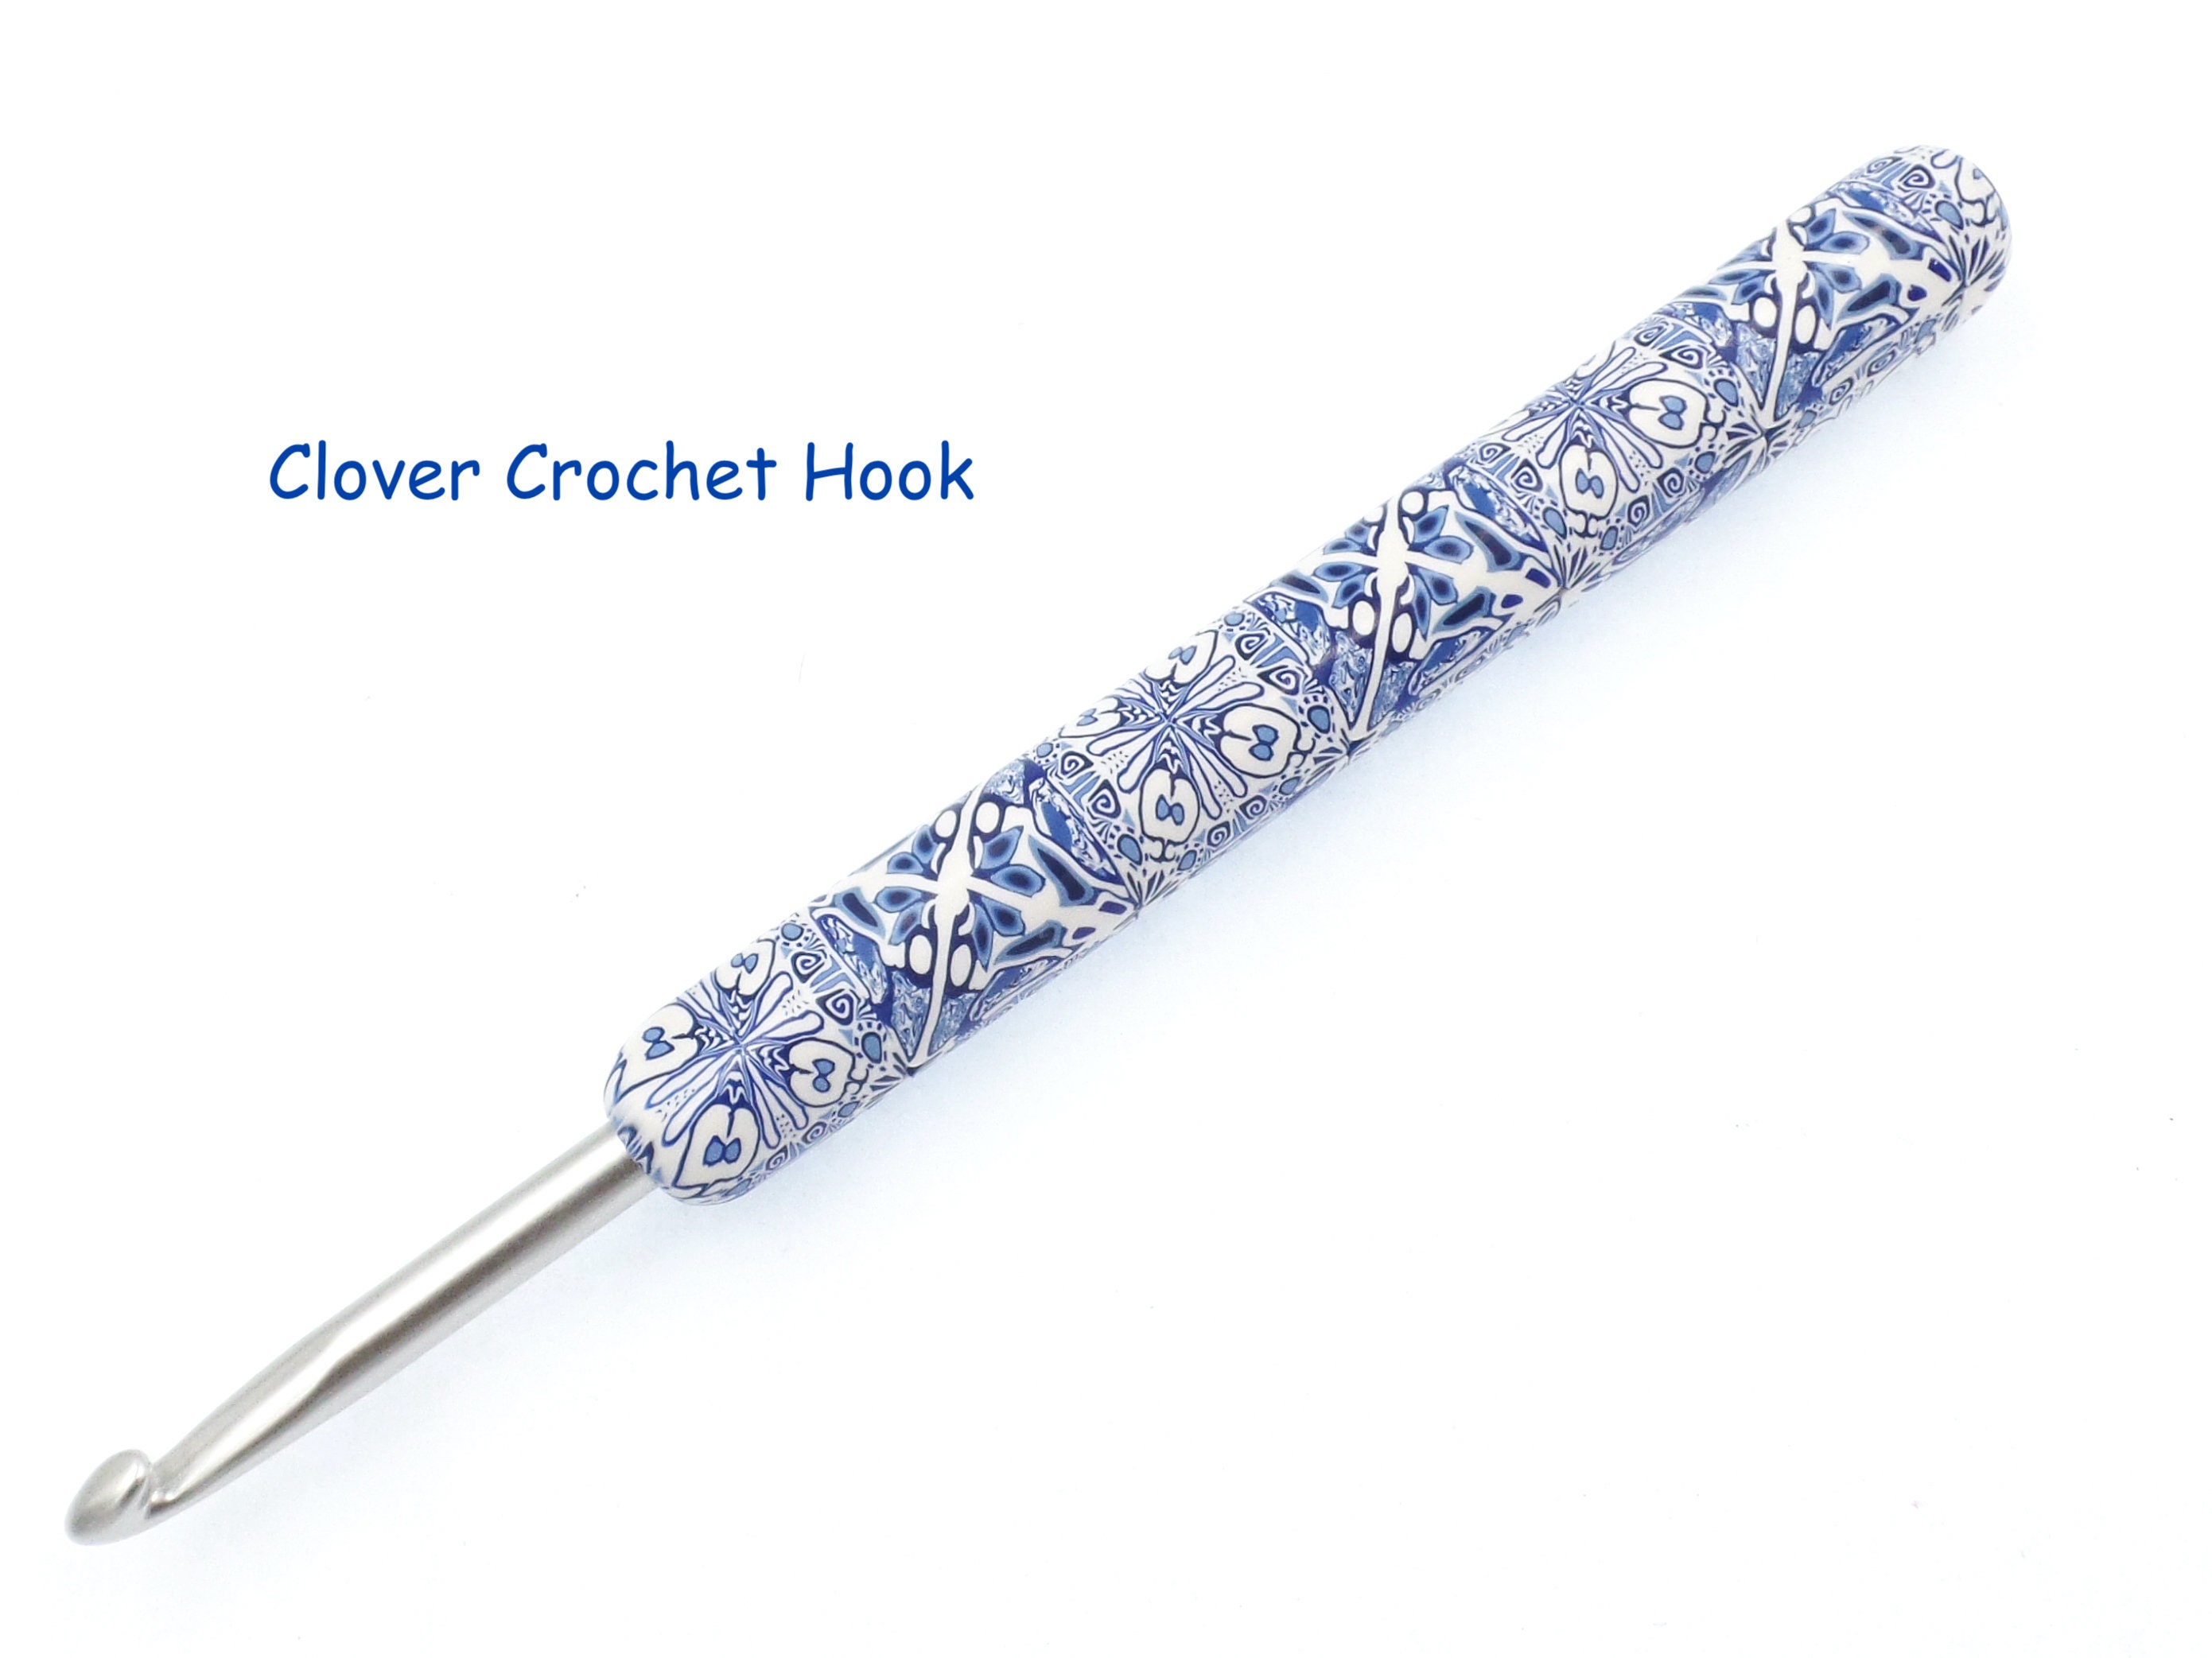 Clover Amour Crochet Hook Set 9 Hooks Sizes: 2mm-6mm Gift Hobby